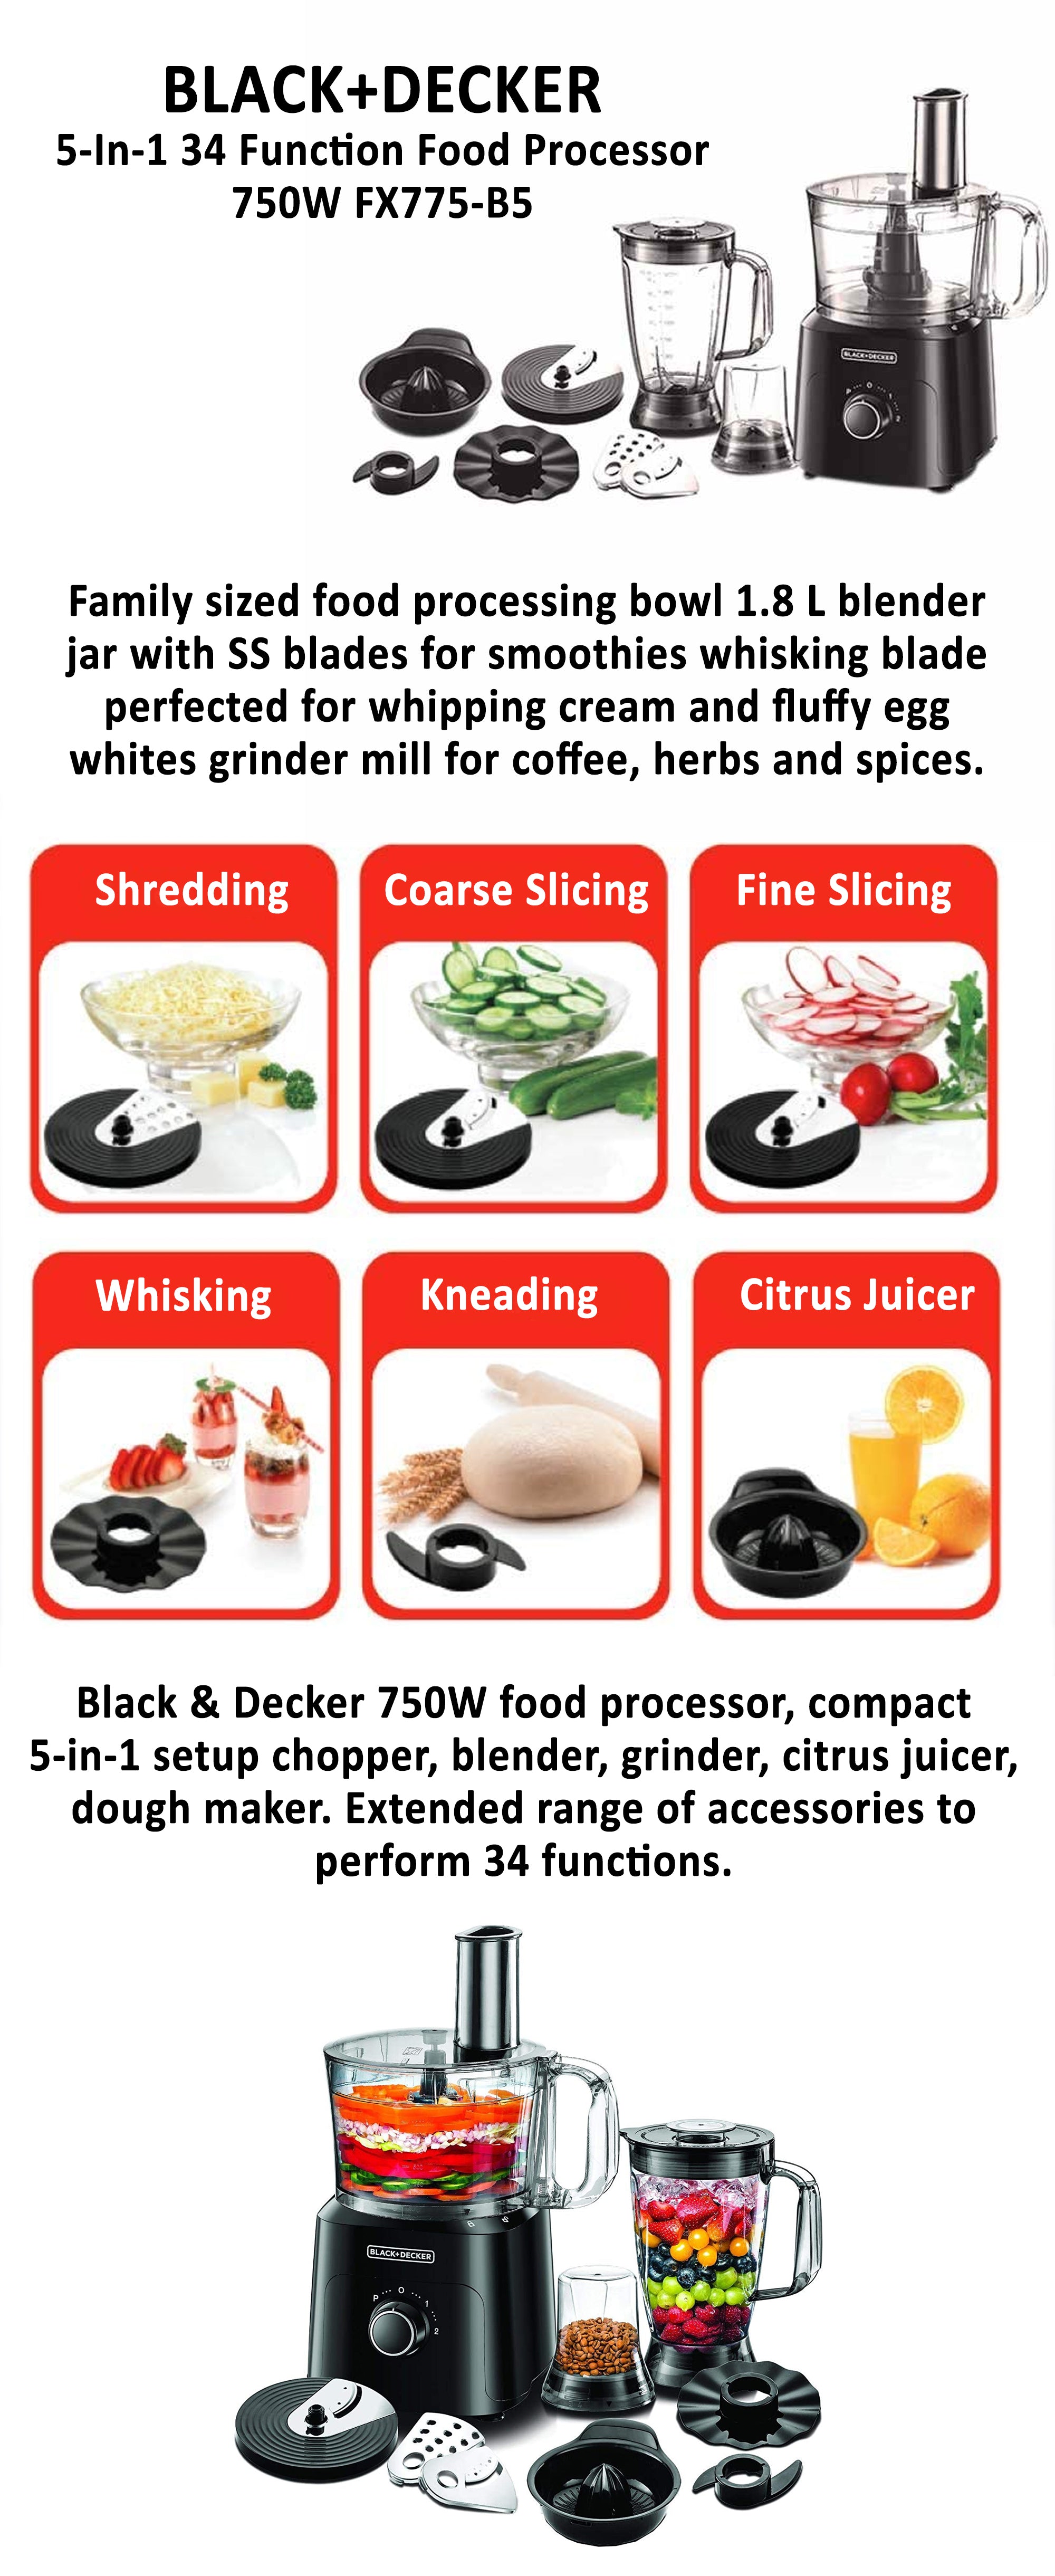 Black+Decker Food Processor With Chopper, Blender, Grinder, Citrus